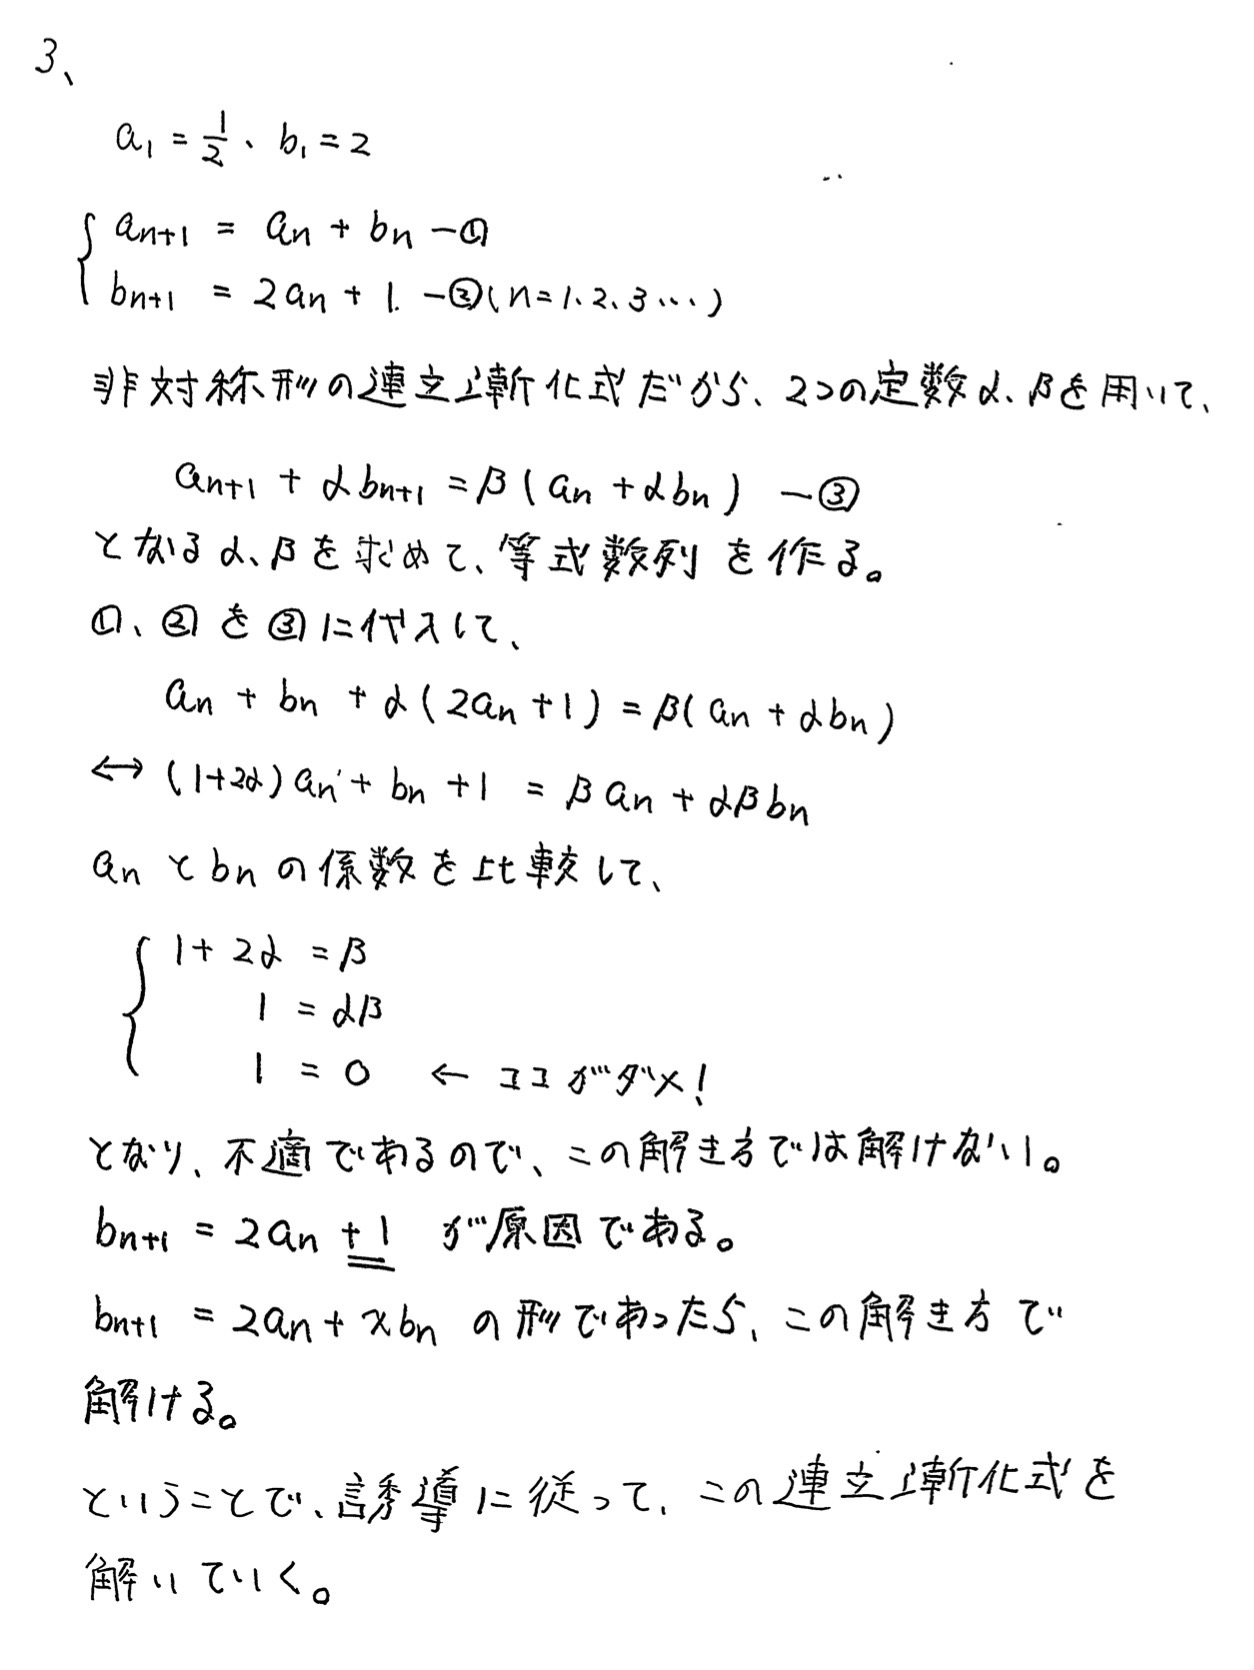 宮崎大学入試文系数学2022年(令和4年)過去問題(解答・解説)